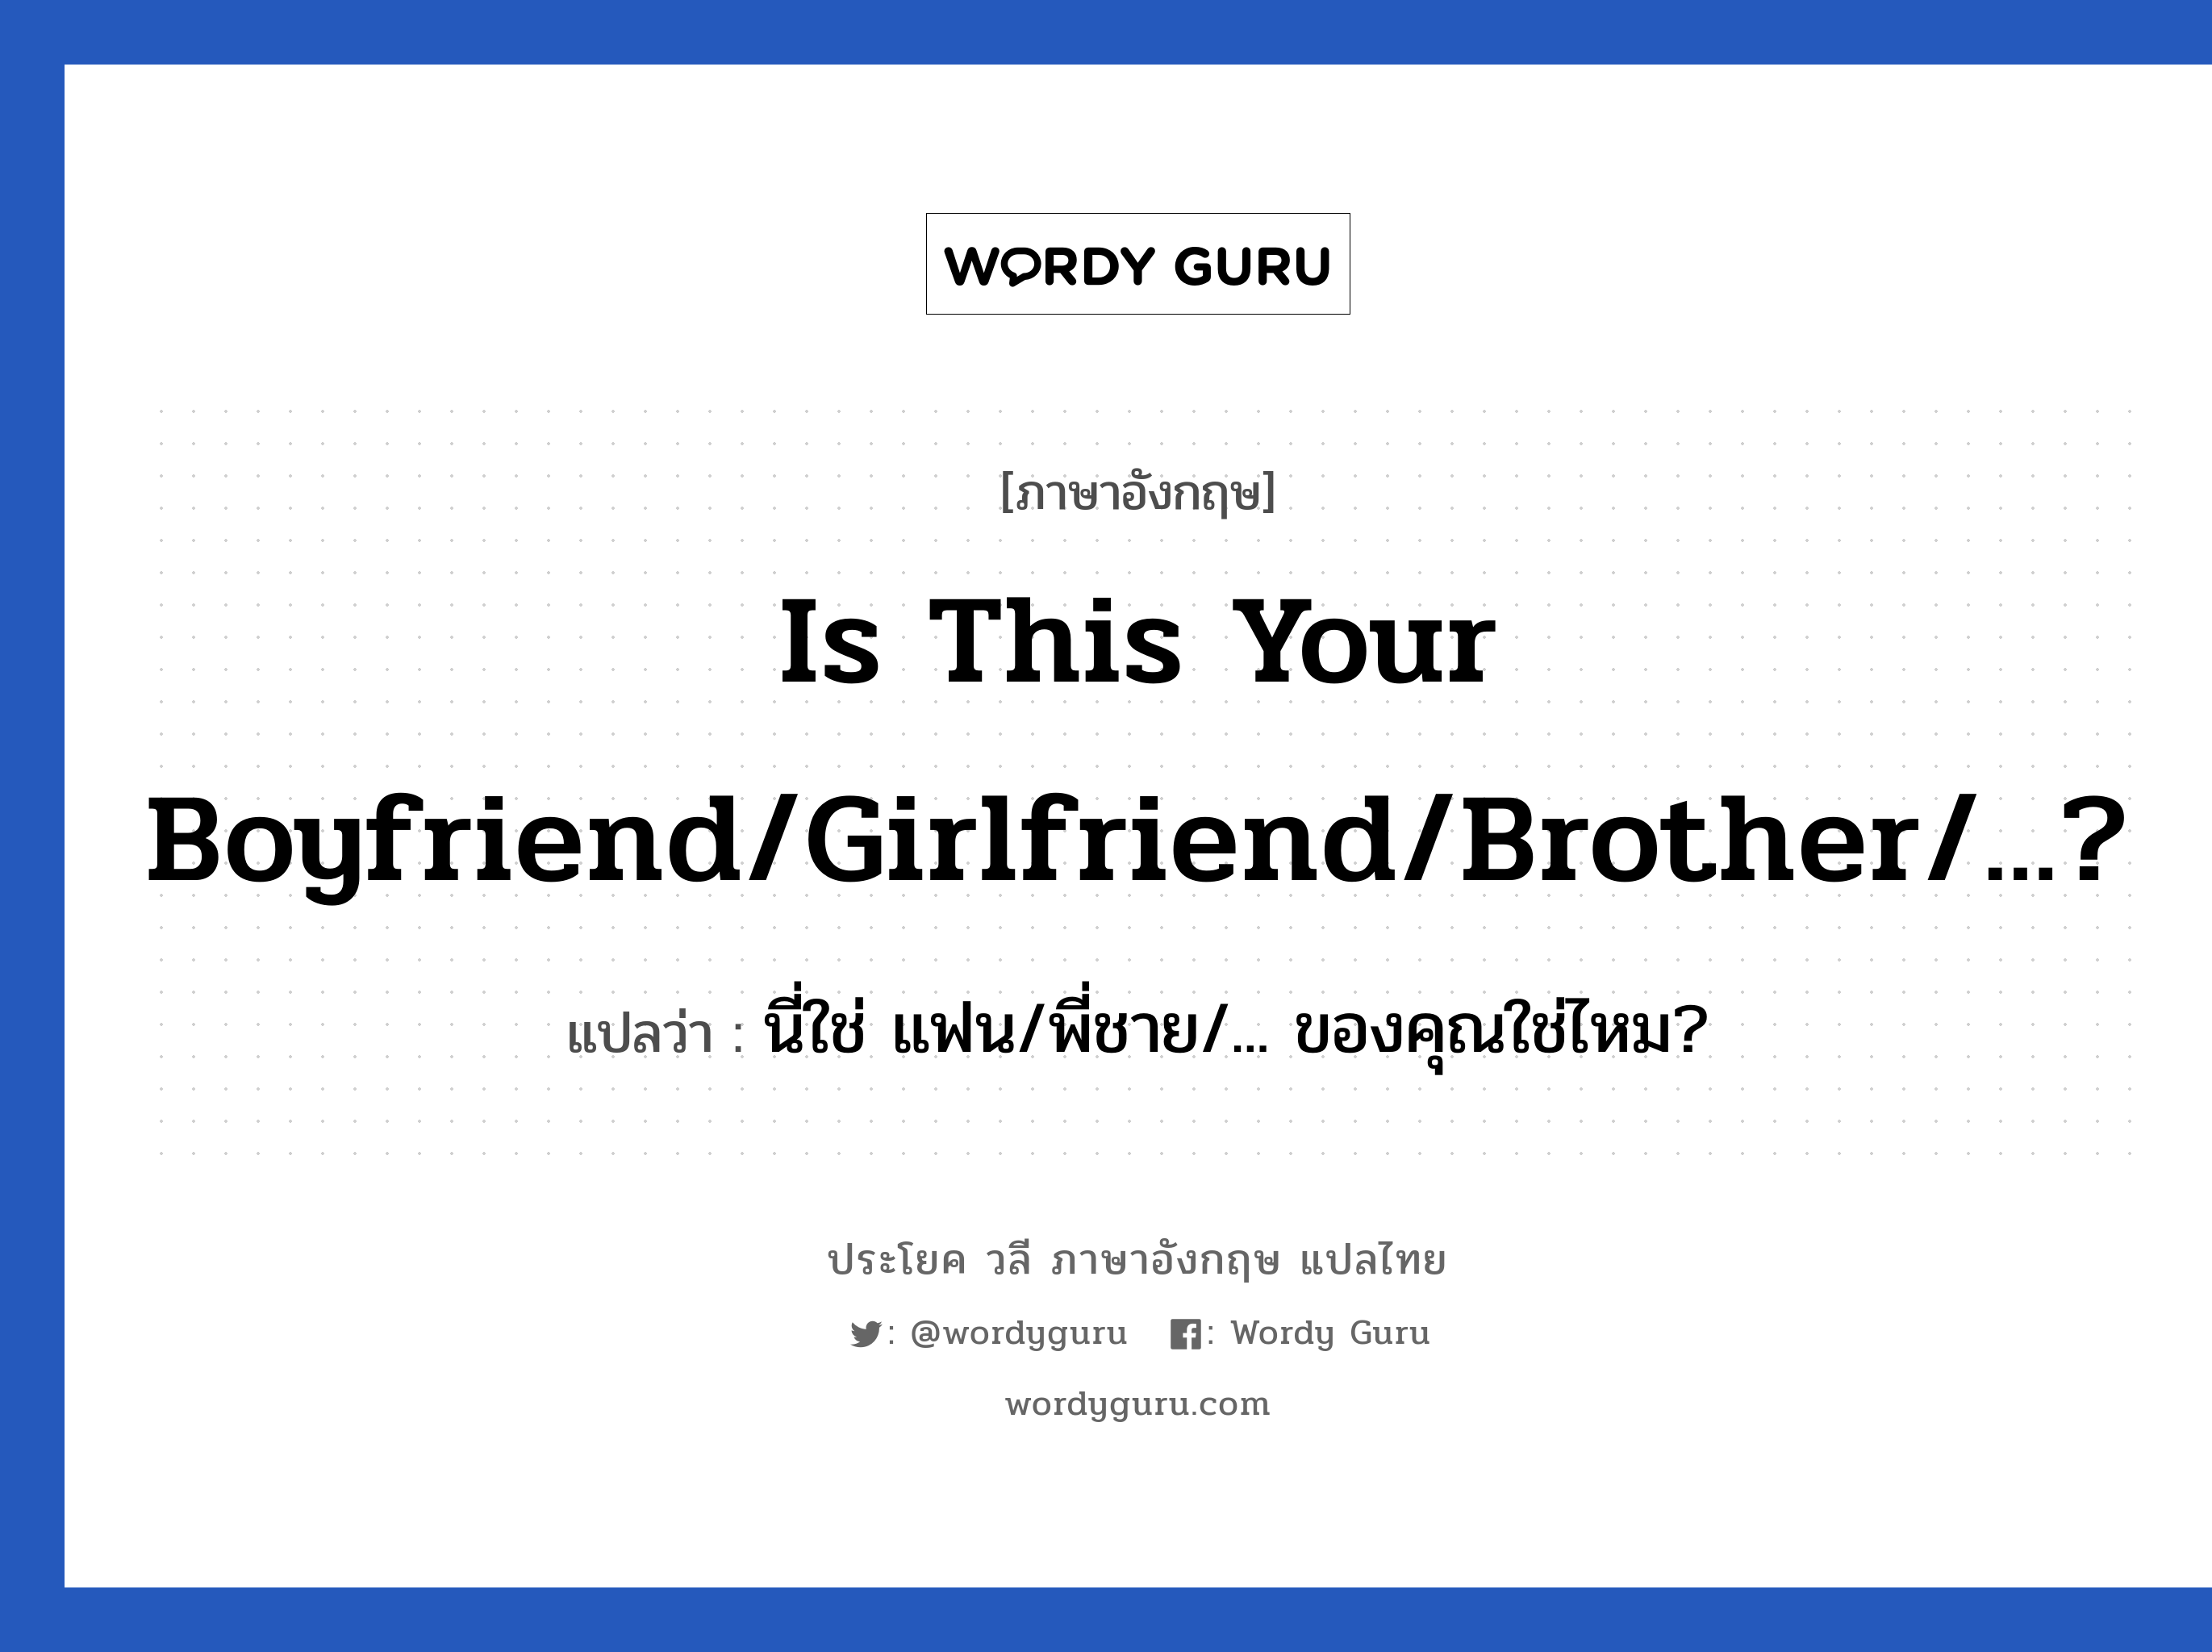 Is this your boyfriend/girlfriend/brother/...? แปลว่า?, วลีภาษาอังกฤษ Is this your boyfriend/girlfriend/brother/...? แปลว่า นี่ใช่ แฟน/พี่ชาย/... ของคุณใช่ไหม?